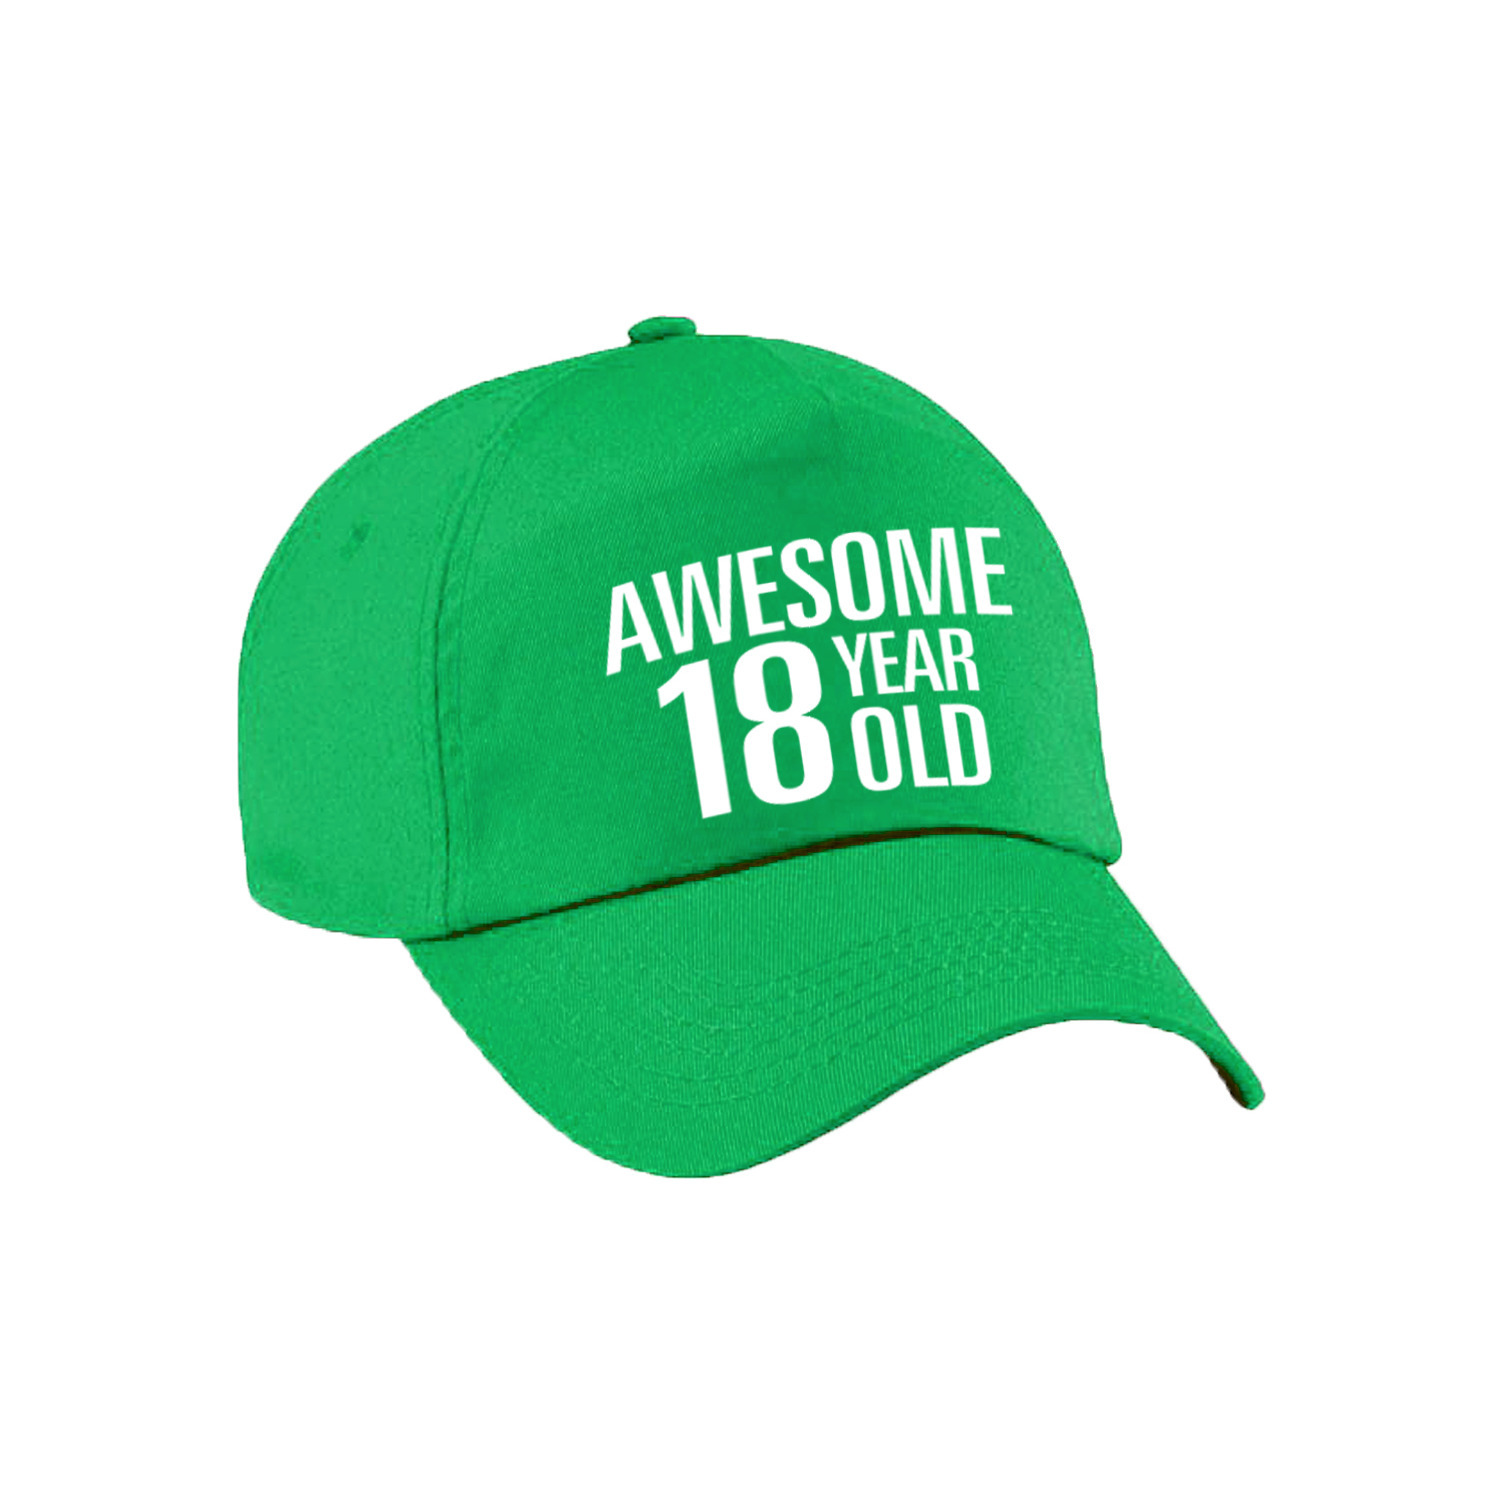 Awesome 18 year old verjaardag pet-cap groen voor dames en heren